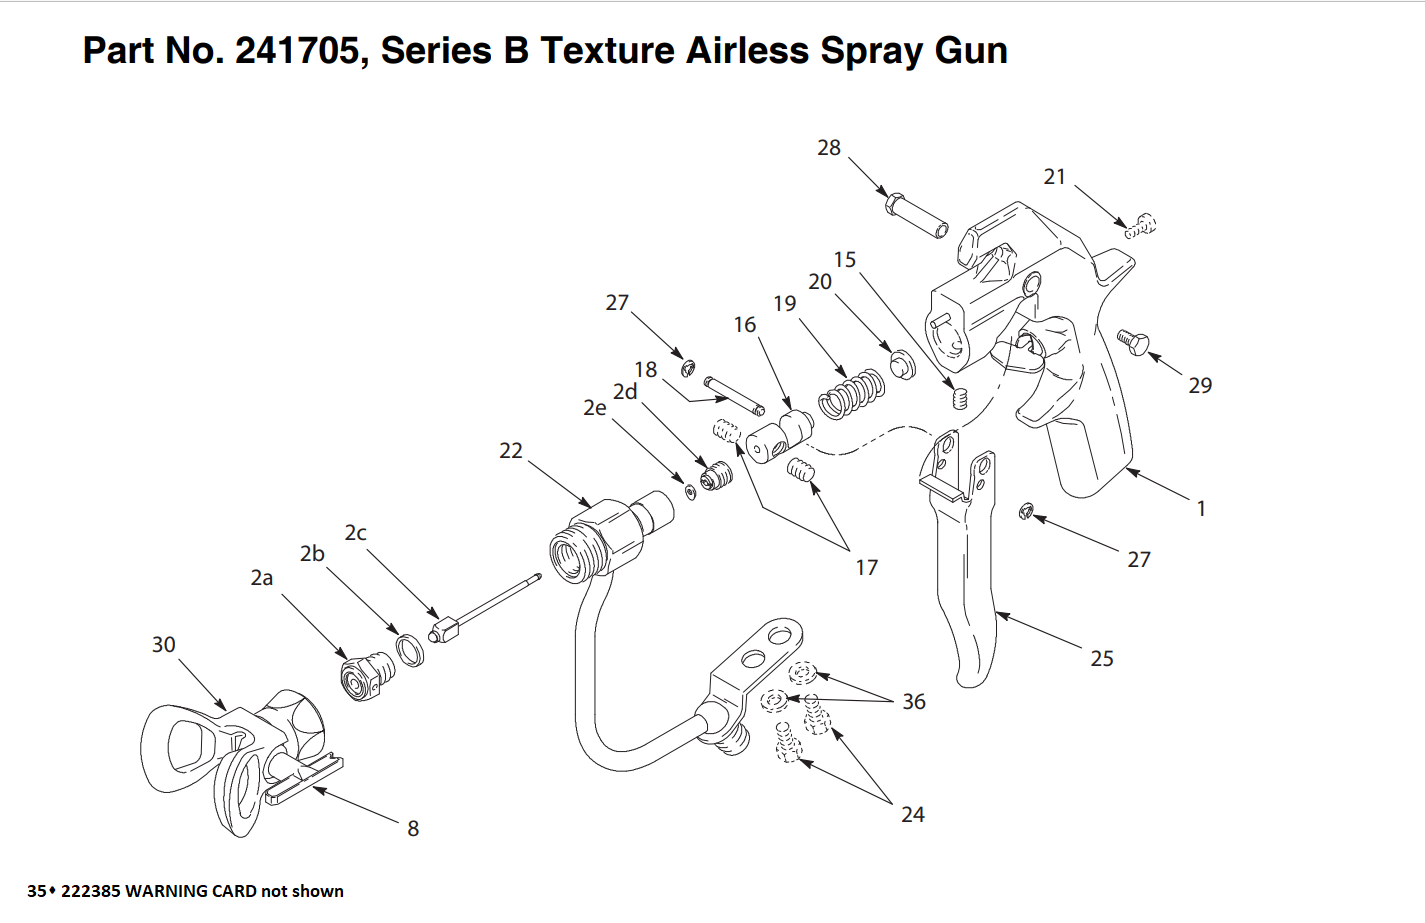 Graco 1095 IronMan Series B Texture Airless Spray Gun